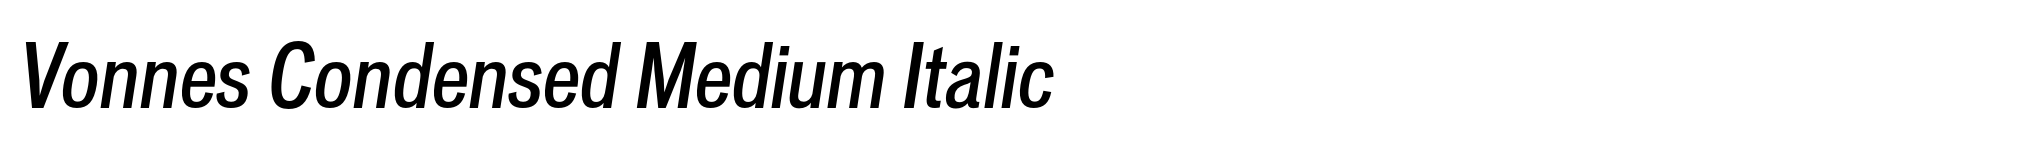 Vonnes Condensed Medium Italic image